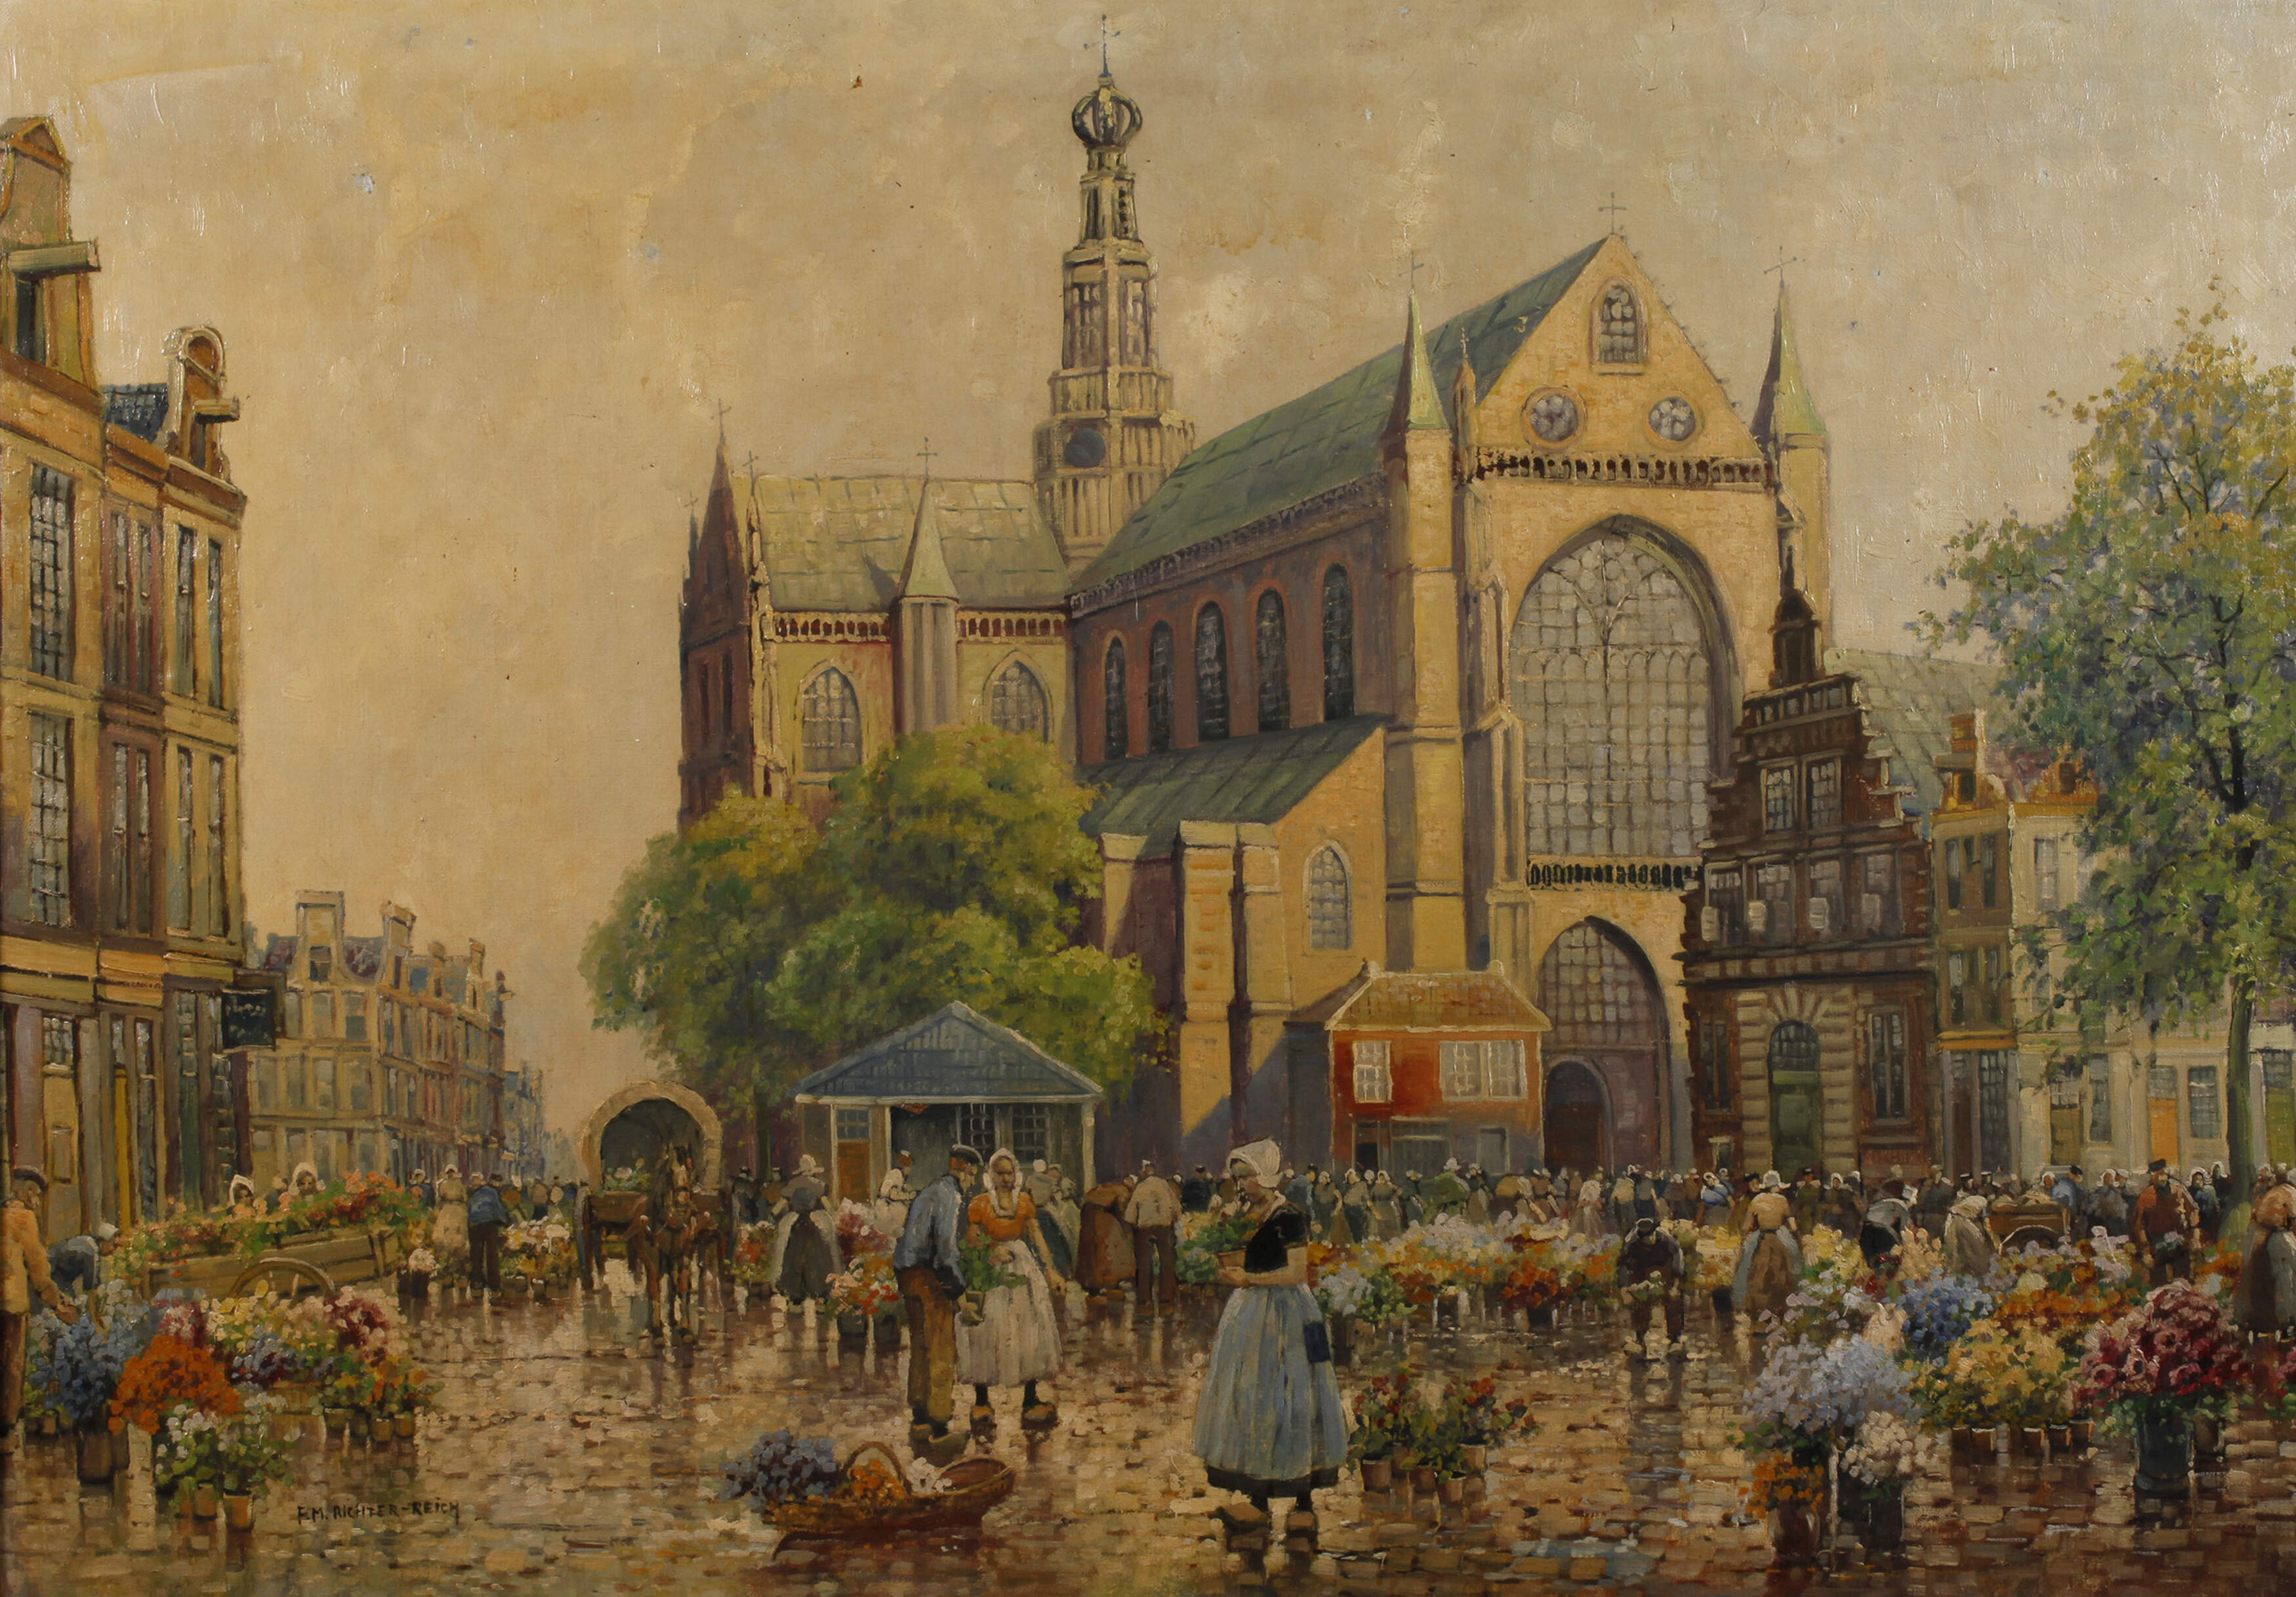 F. Max Richter-Reich, Blumenmarkt in Haarlem